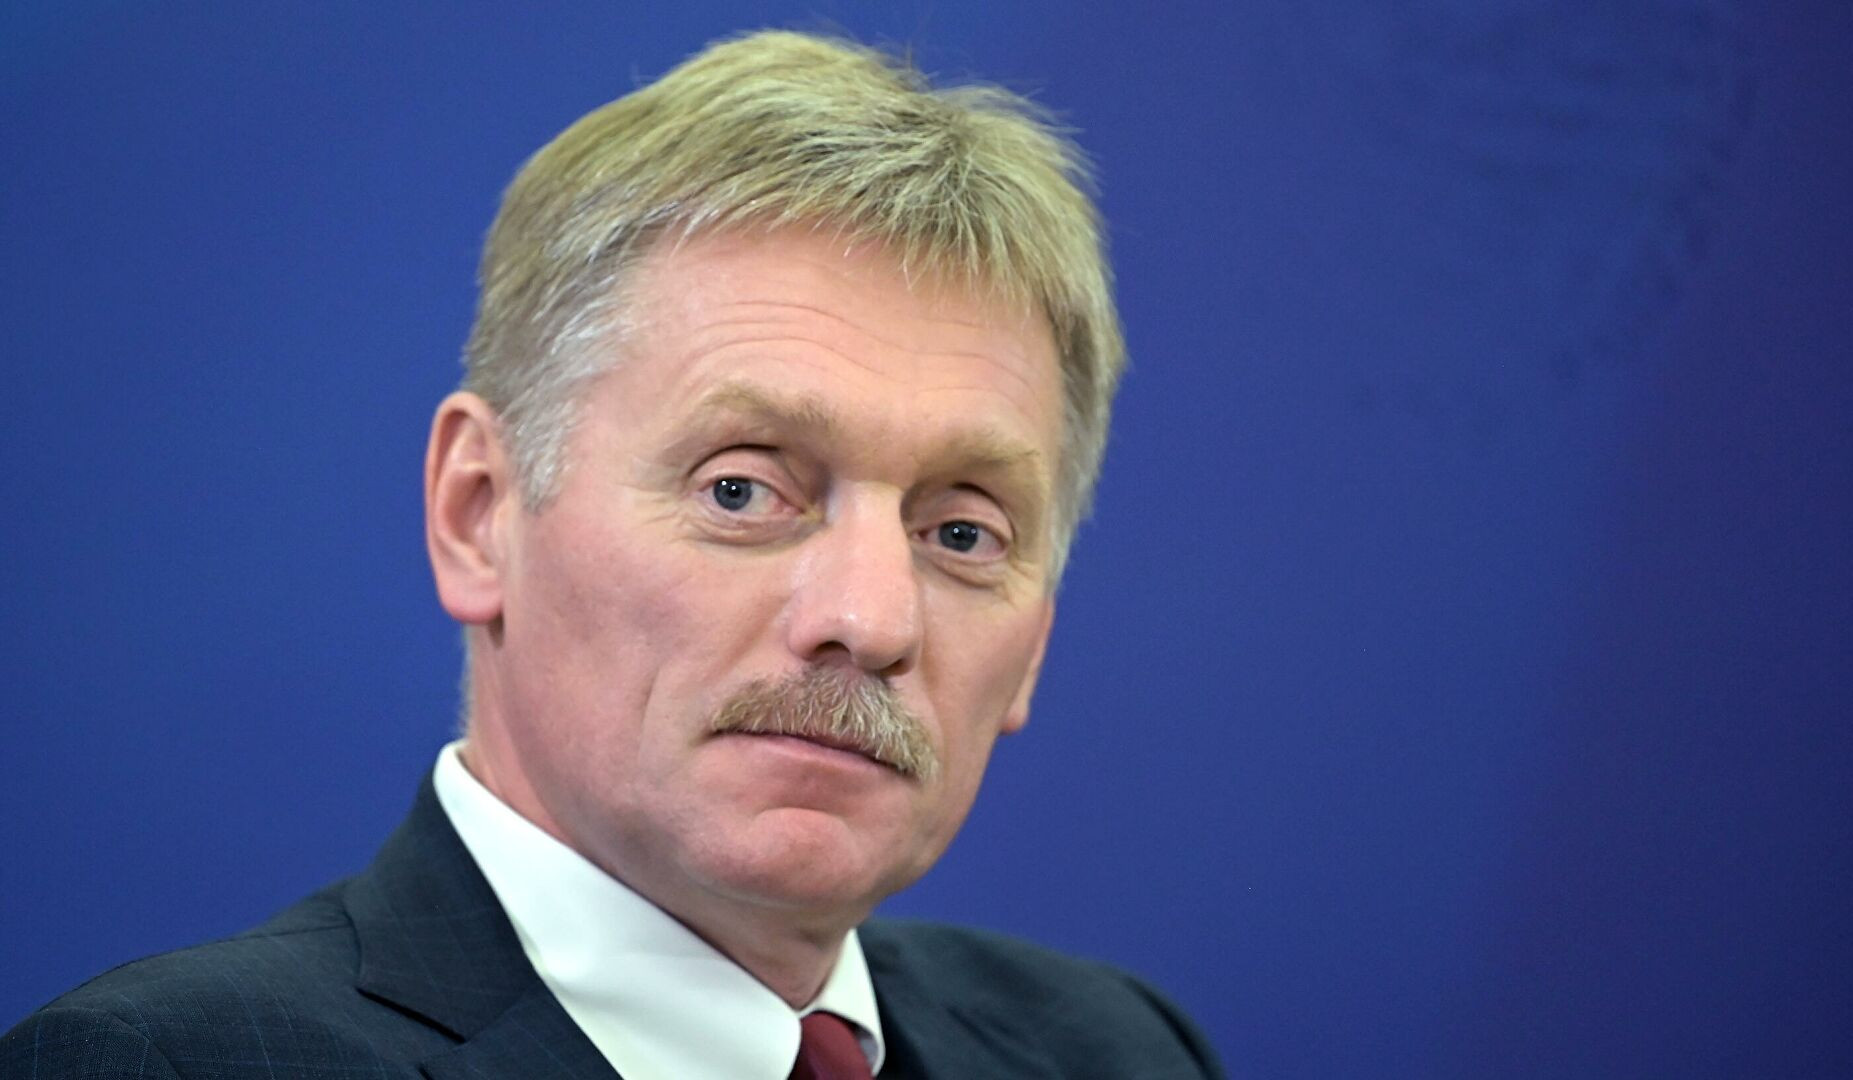 Putin ready to negotiate over situation around Ukraine: Peskov